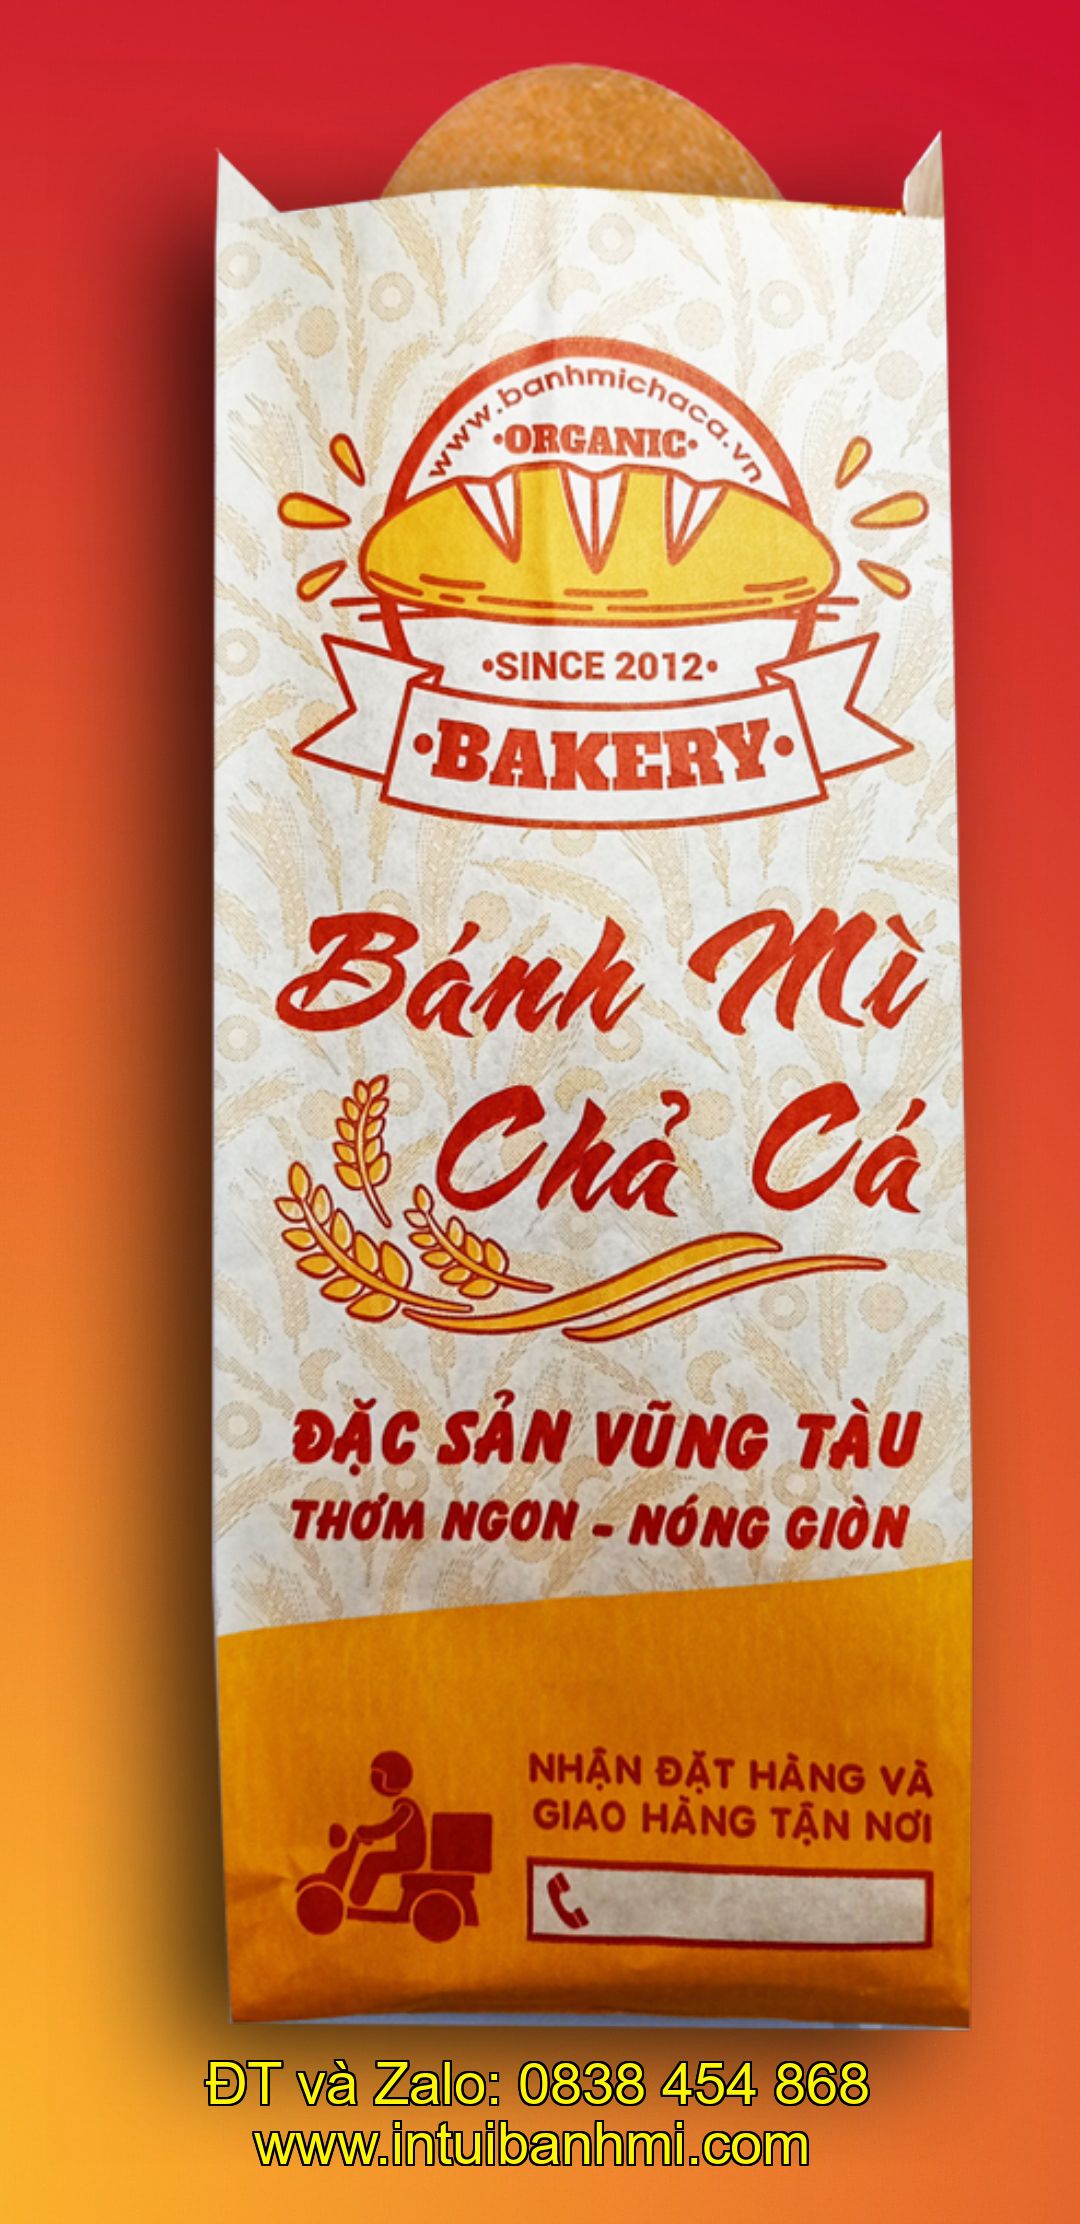 Các quan tâm khi in ấn các loại bao bì bánh mì tại longan.intuibanhmi.com